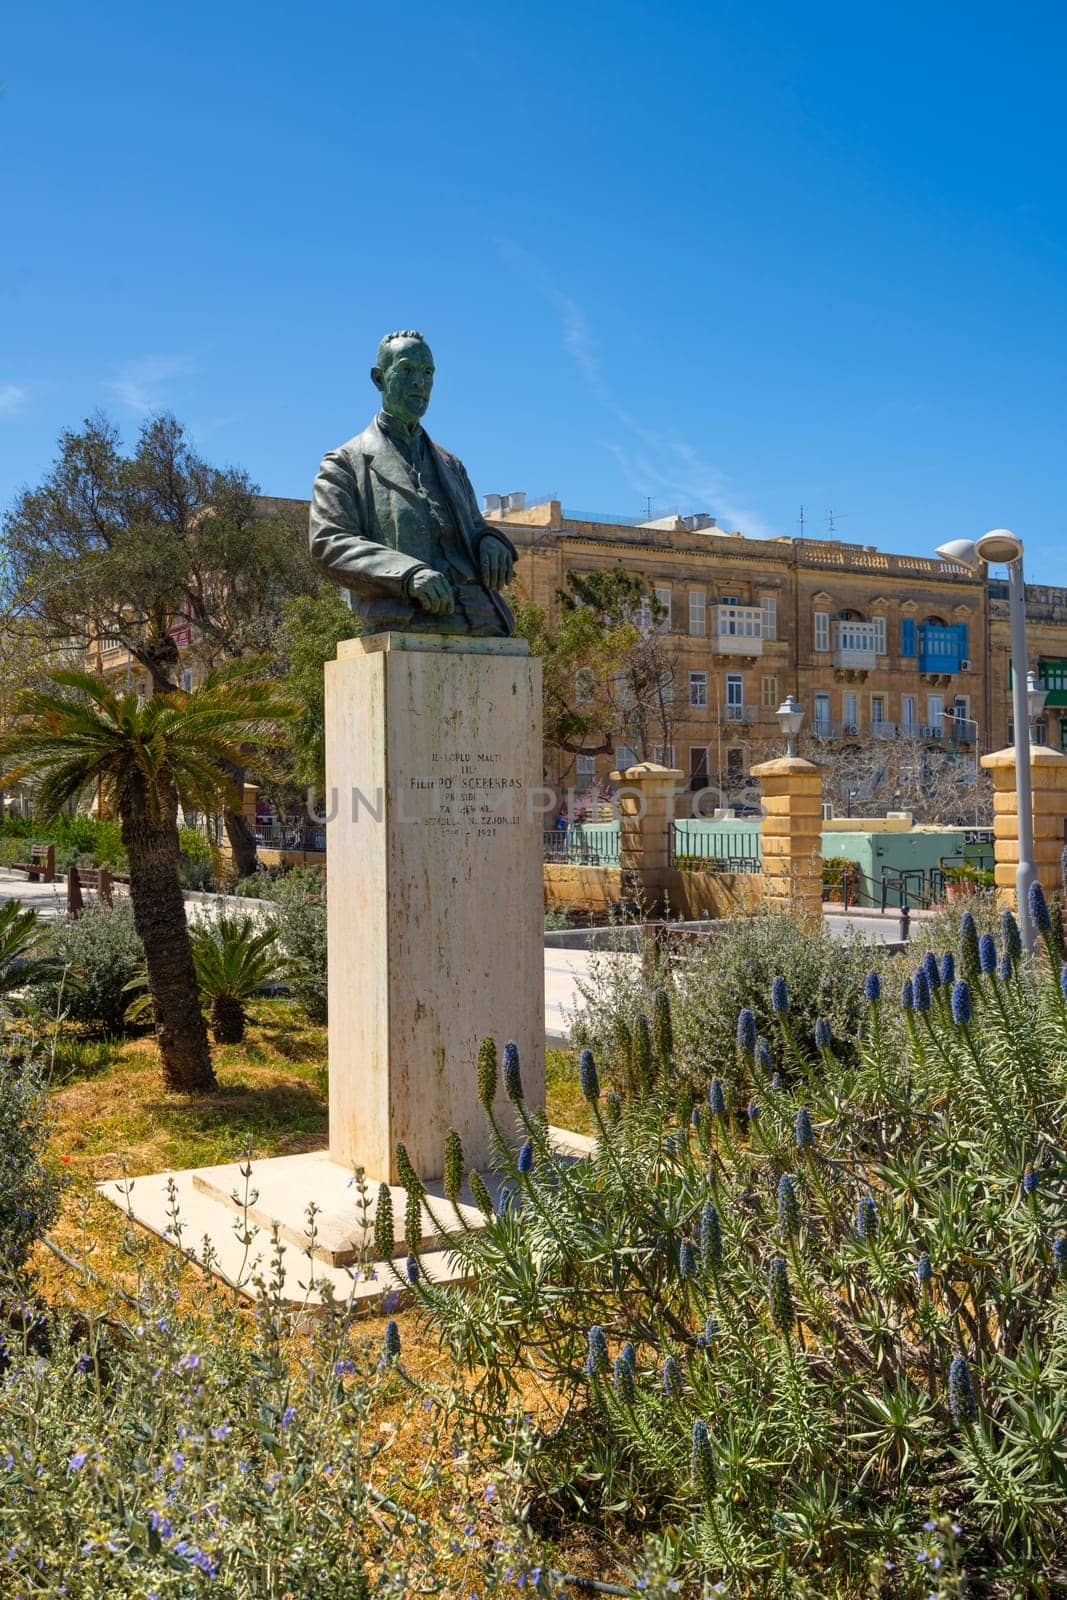 The Maglio gardens in Valletta, Malta by sergiodv